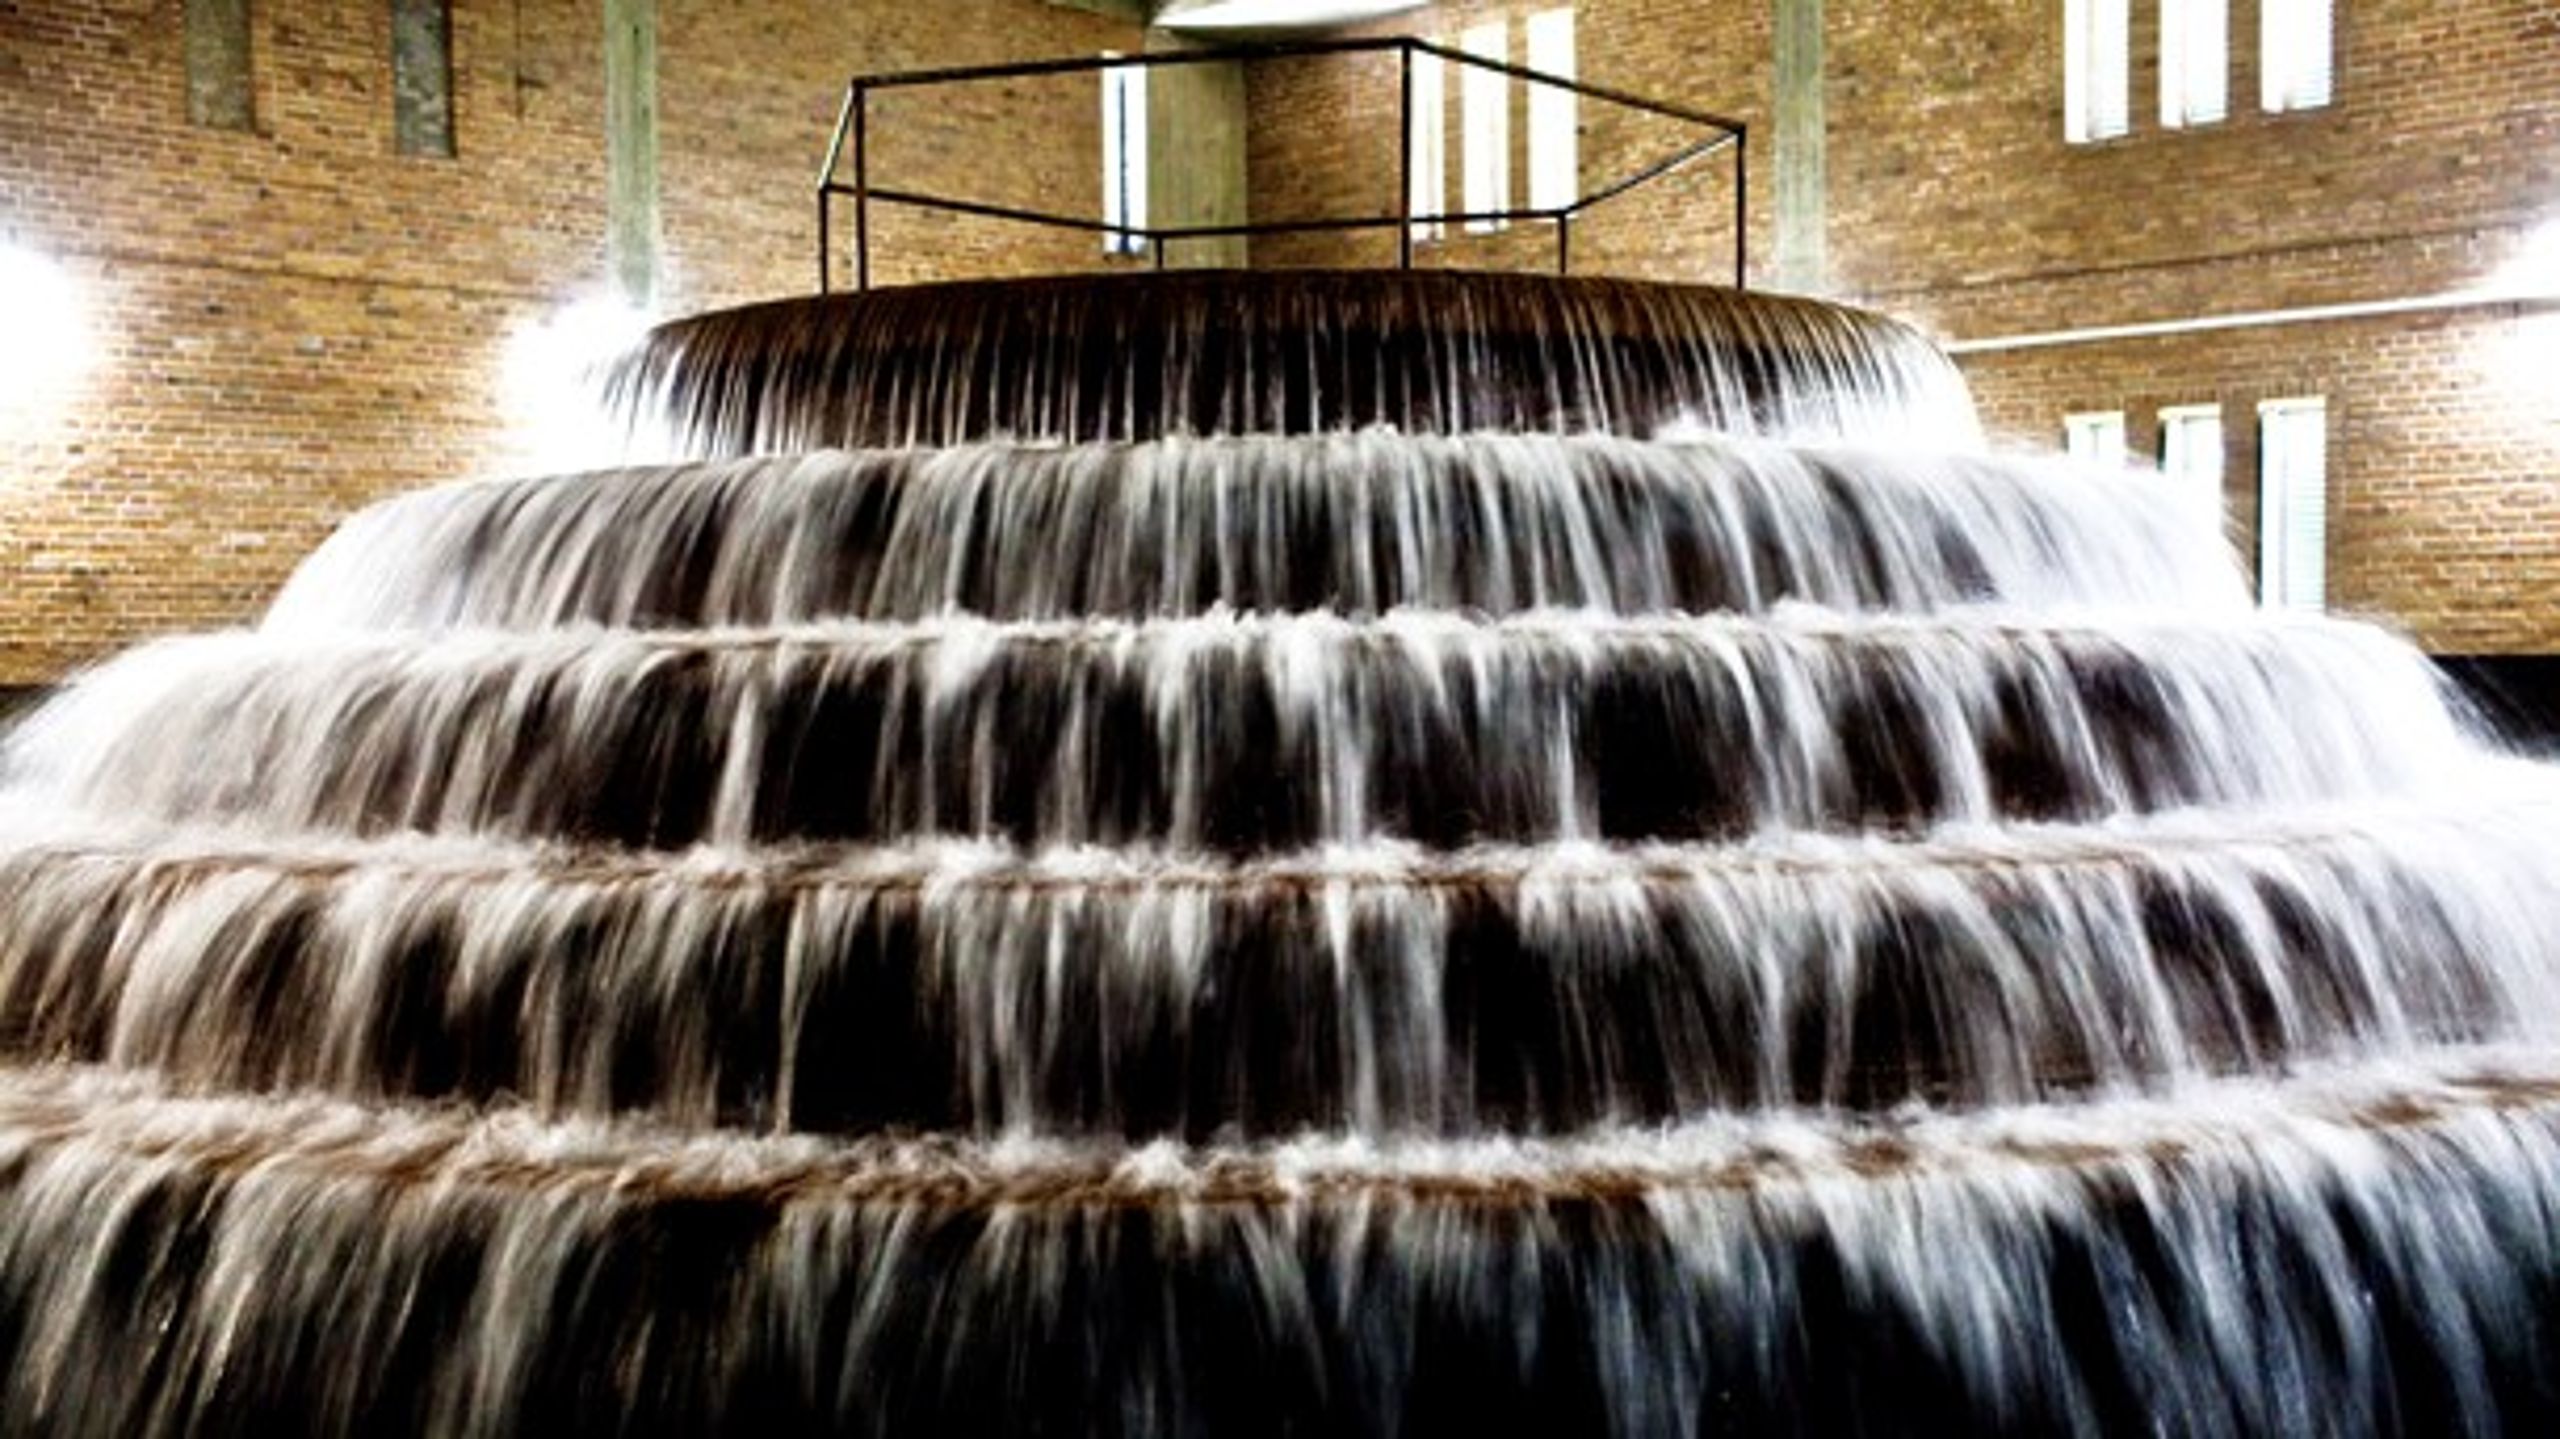 De forbrugerejede vandværker skal være et laboratorium for udvikling af vandteknologi, der kan styrke en bæredygtig vandsektor, skriver Danske Vandværkers direktør.